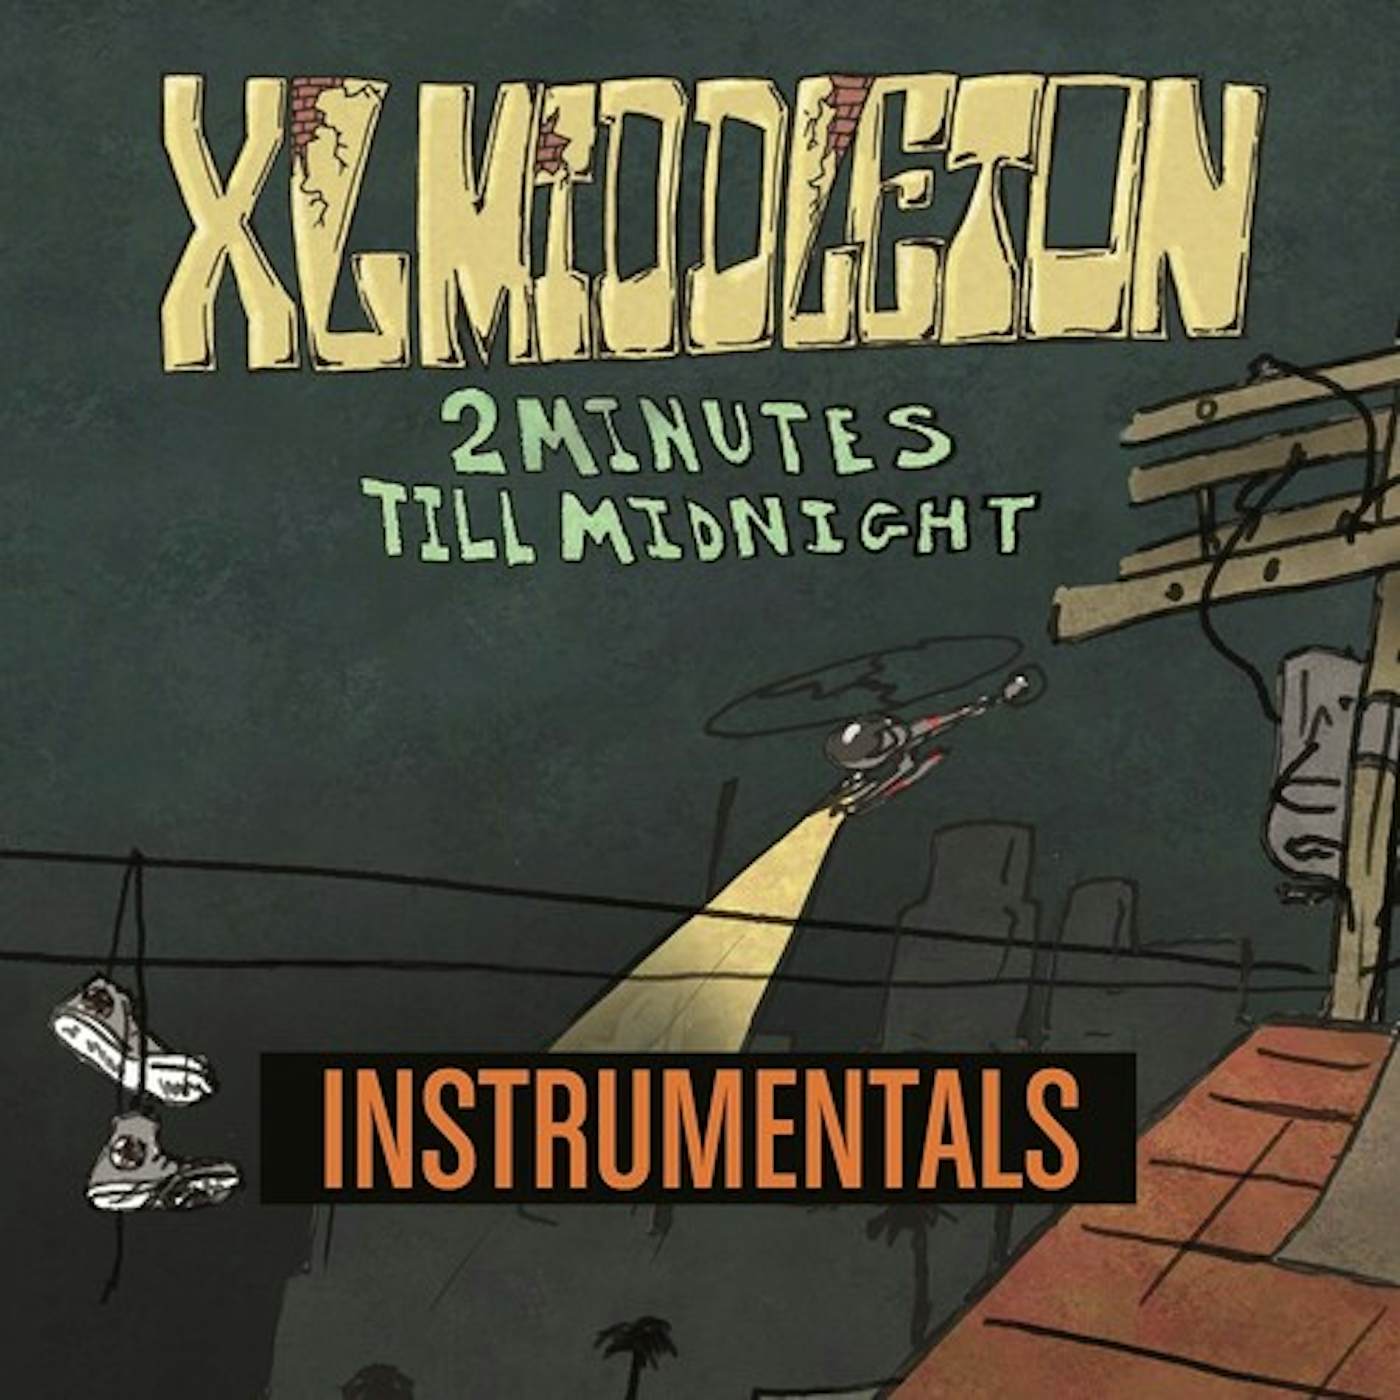 XL Middleton 2 Minutes Till Midnight Instrumentals Vinyl Record